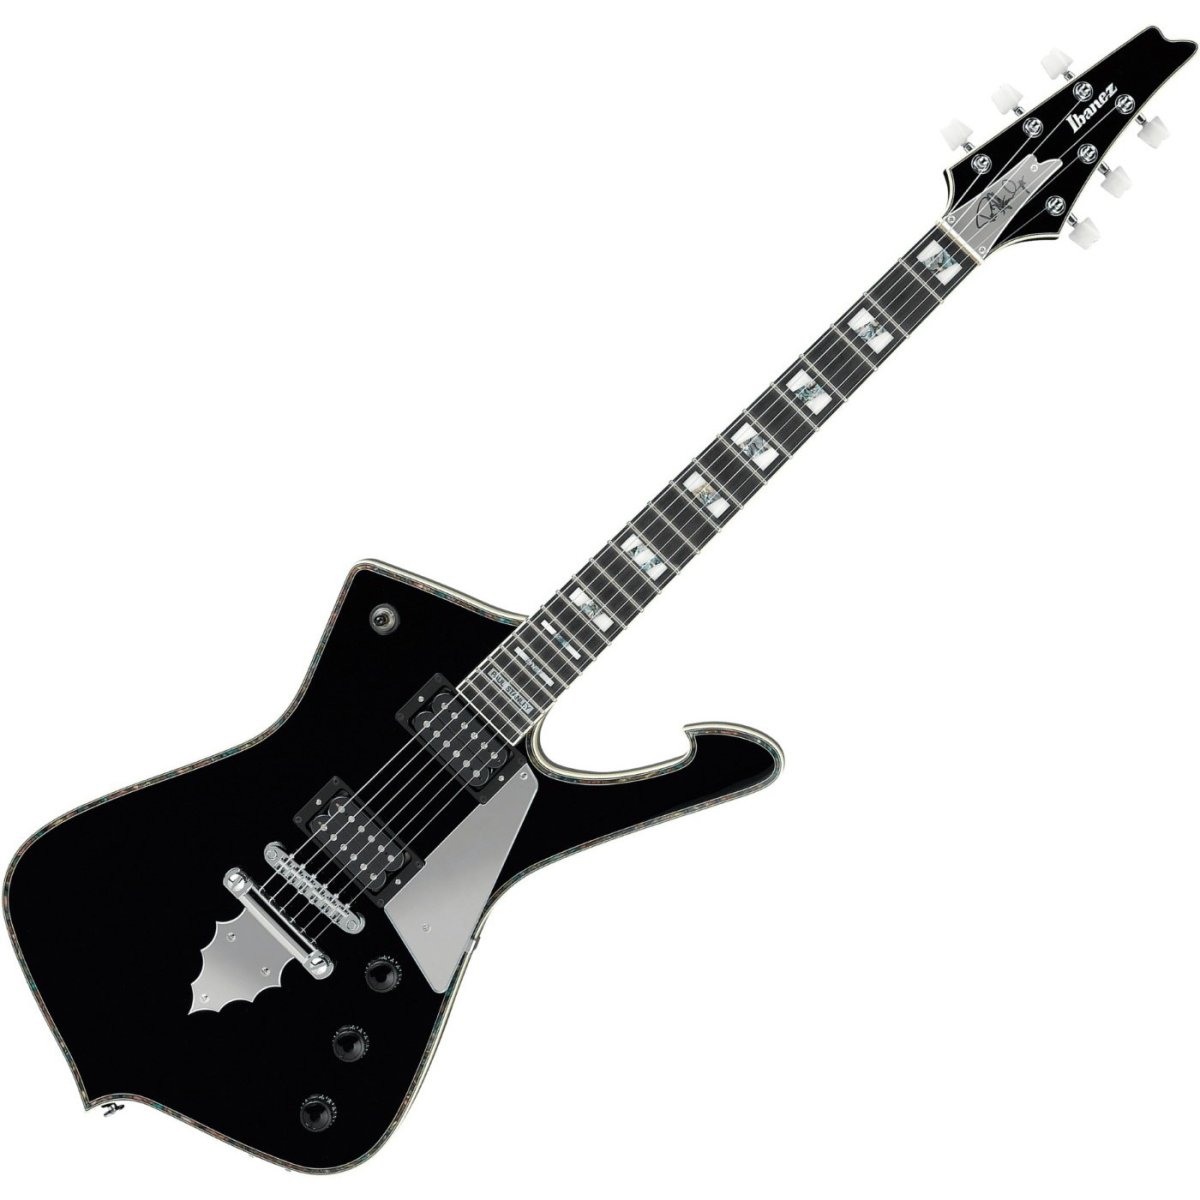 Paul Stanley Ibanez гитара